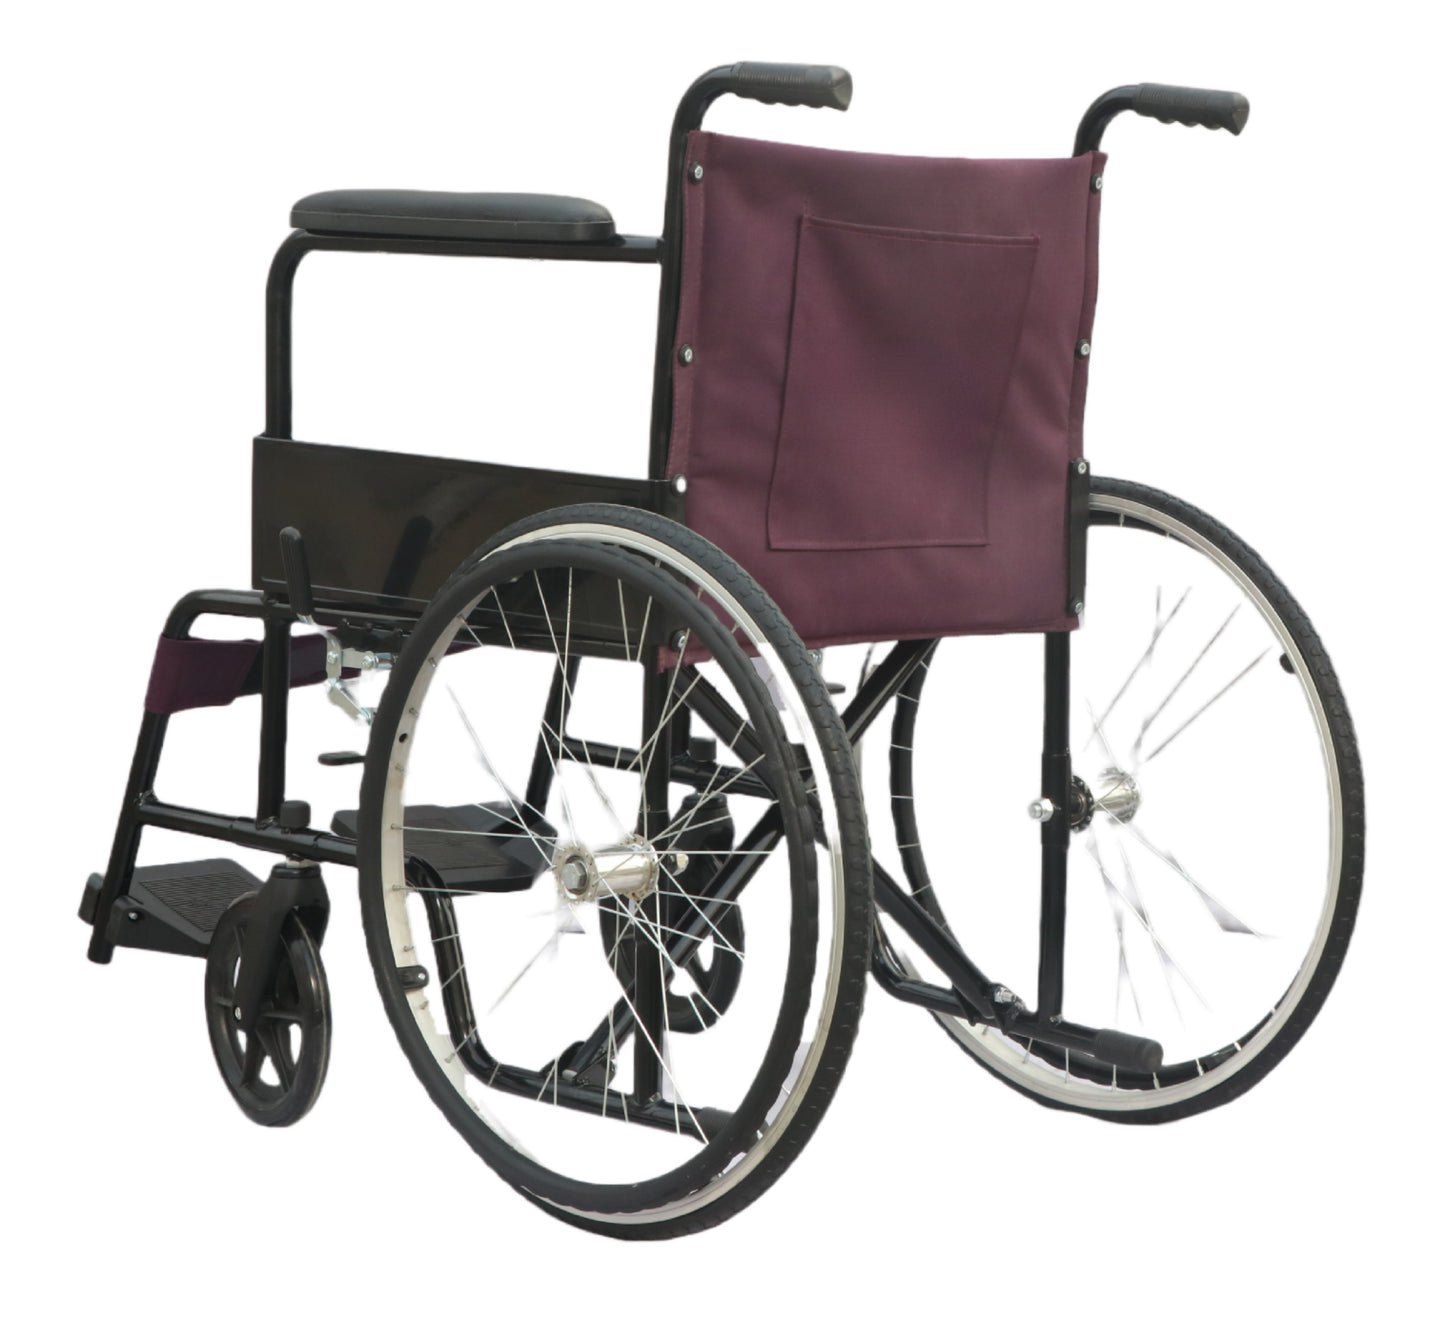 Anrace Spoke Wheelchair Black